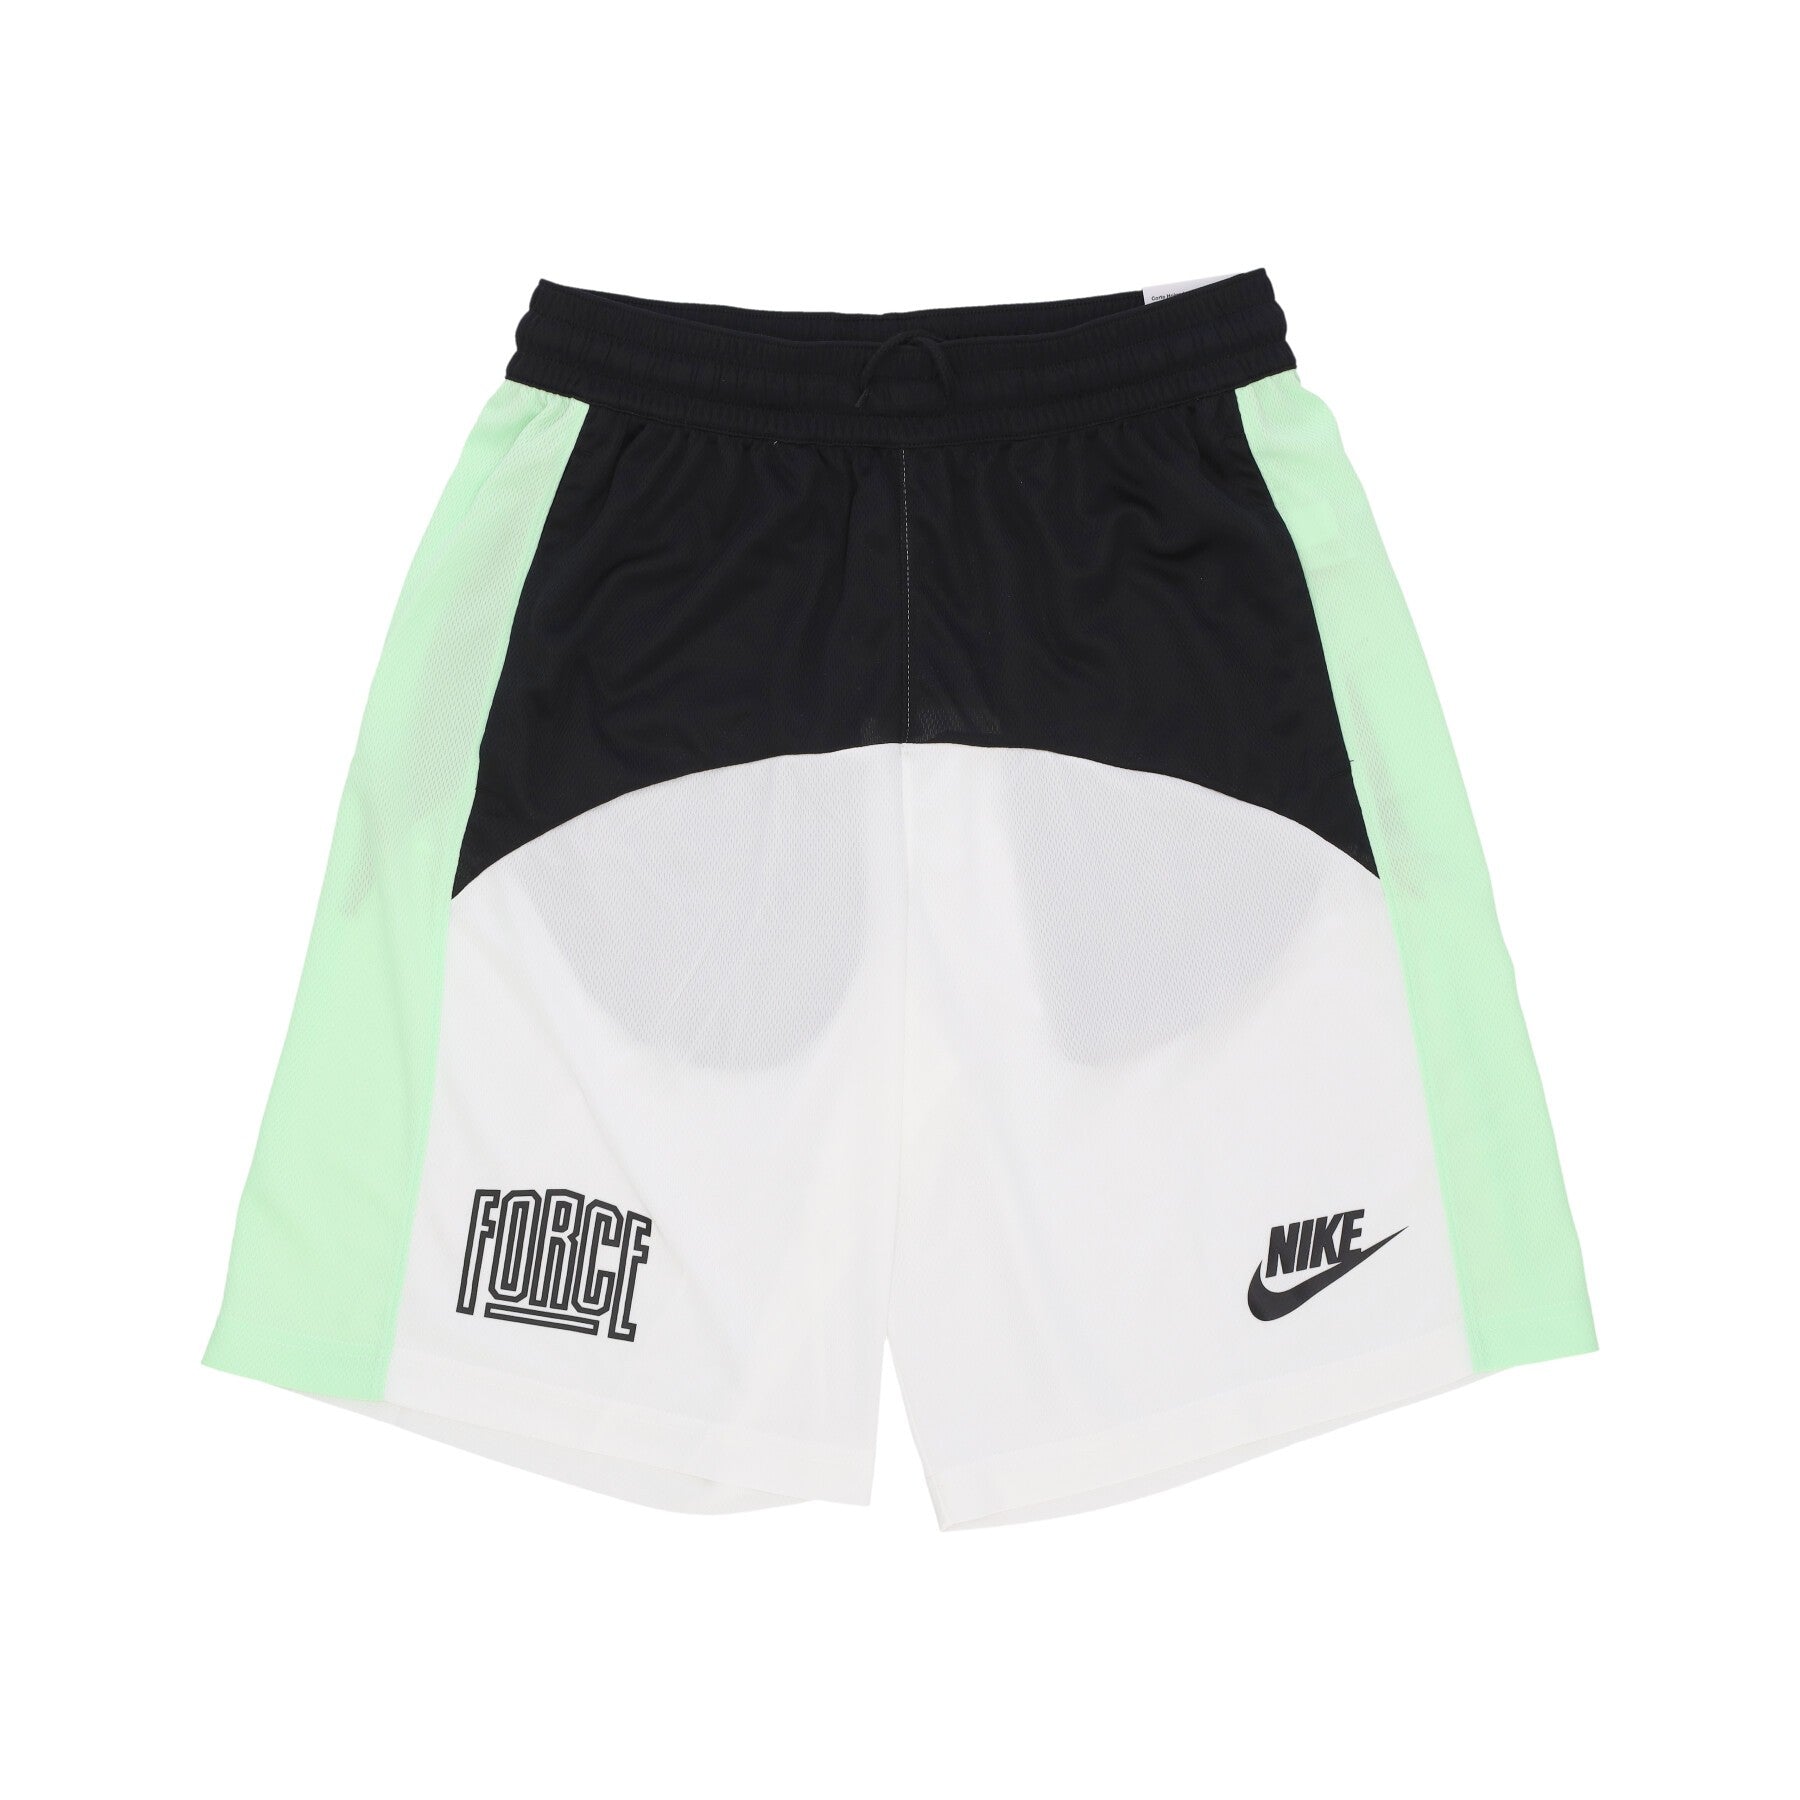 Pantaloncino Tipo Basket Uomo Dri-fit Starting5 11 Basketball Short Black/white/vapor Green/black DQ5826